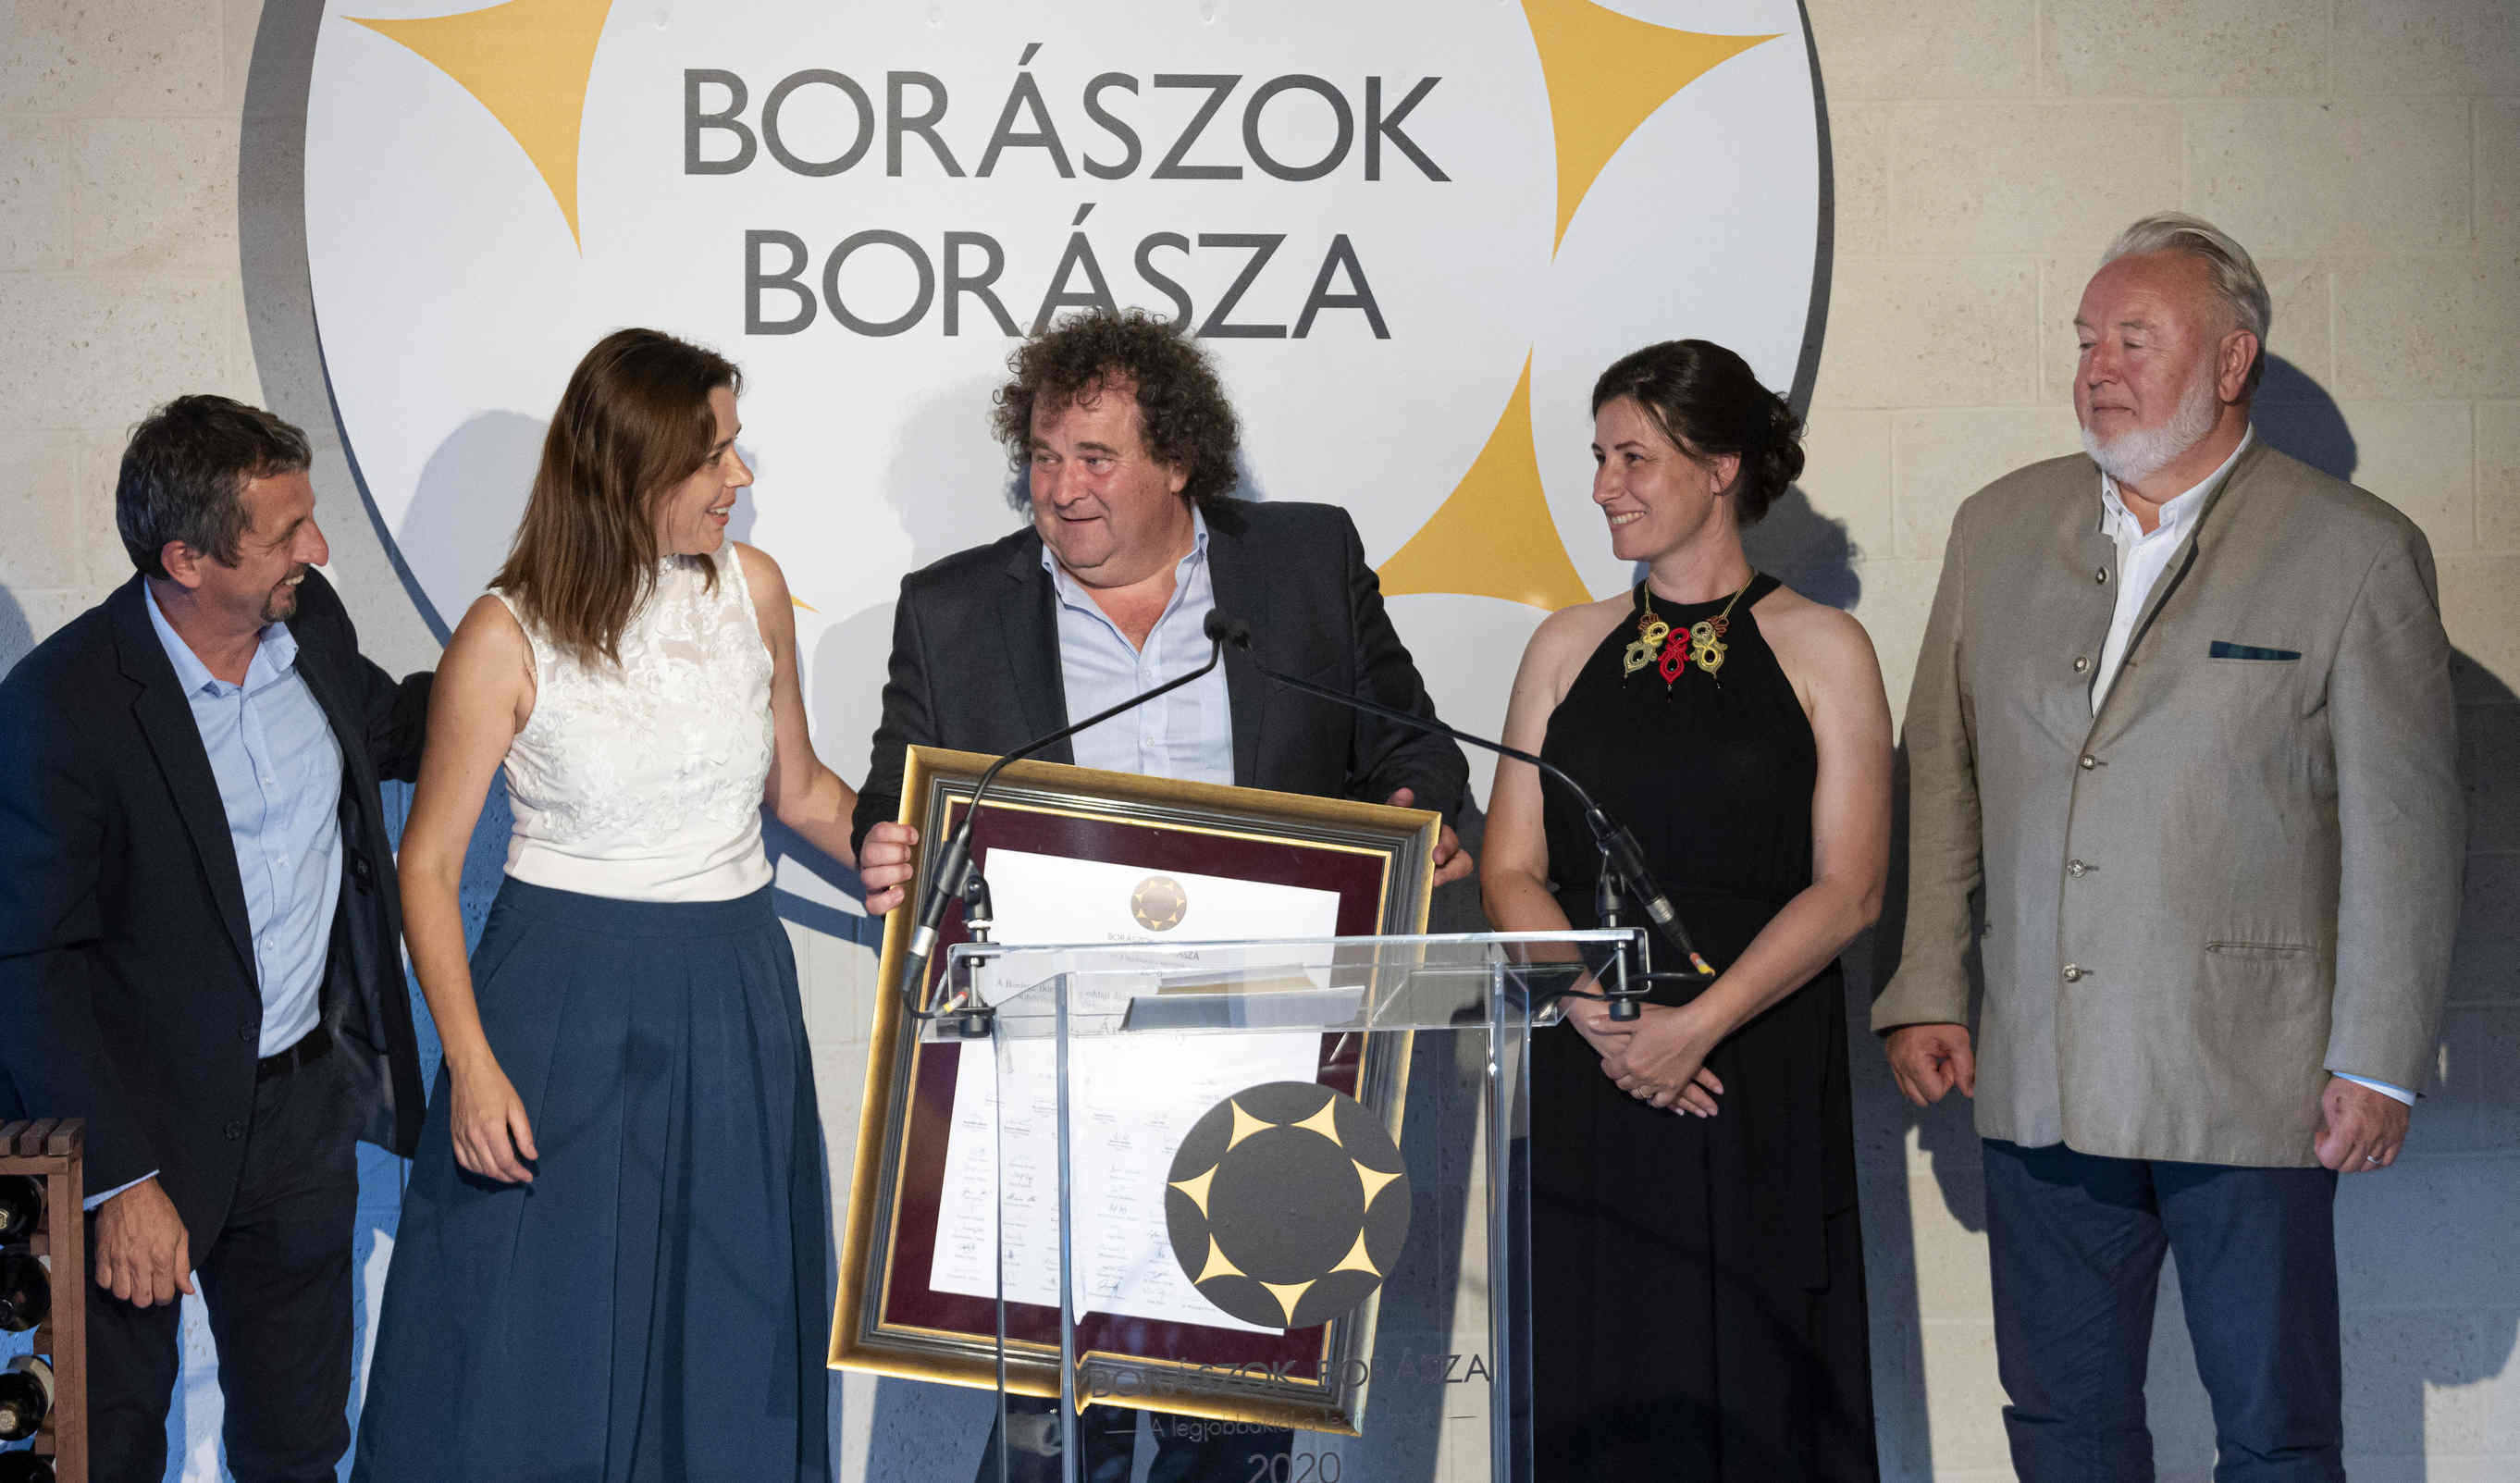 Borászok-borásza-2020-釀酒師-匈牙利-top5